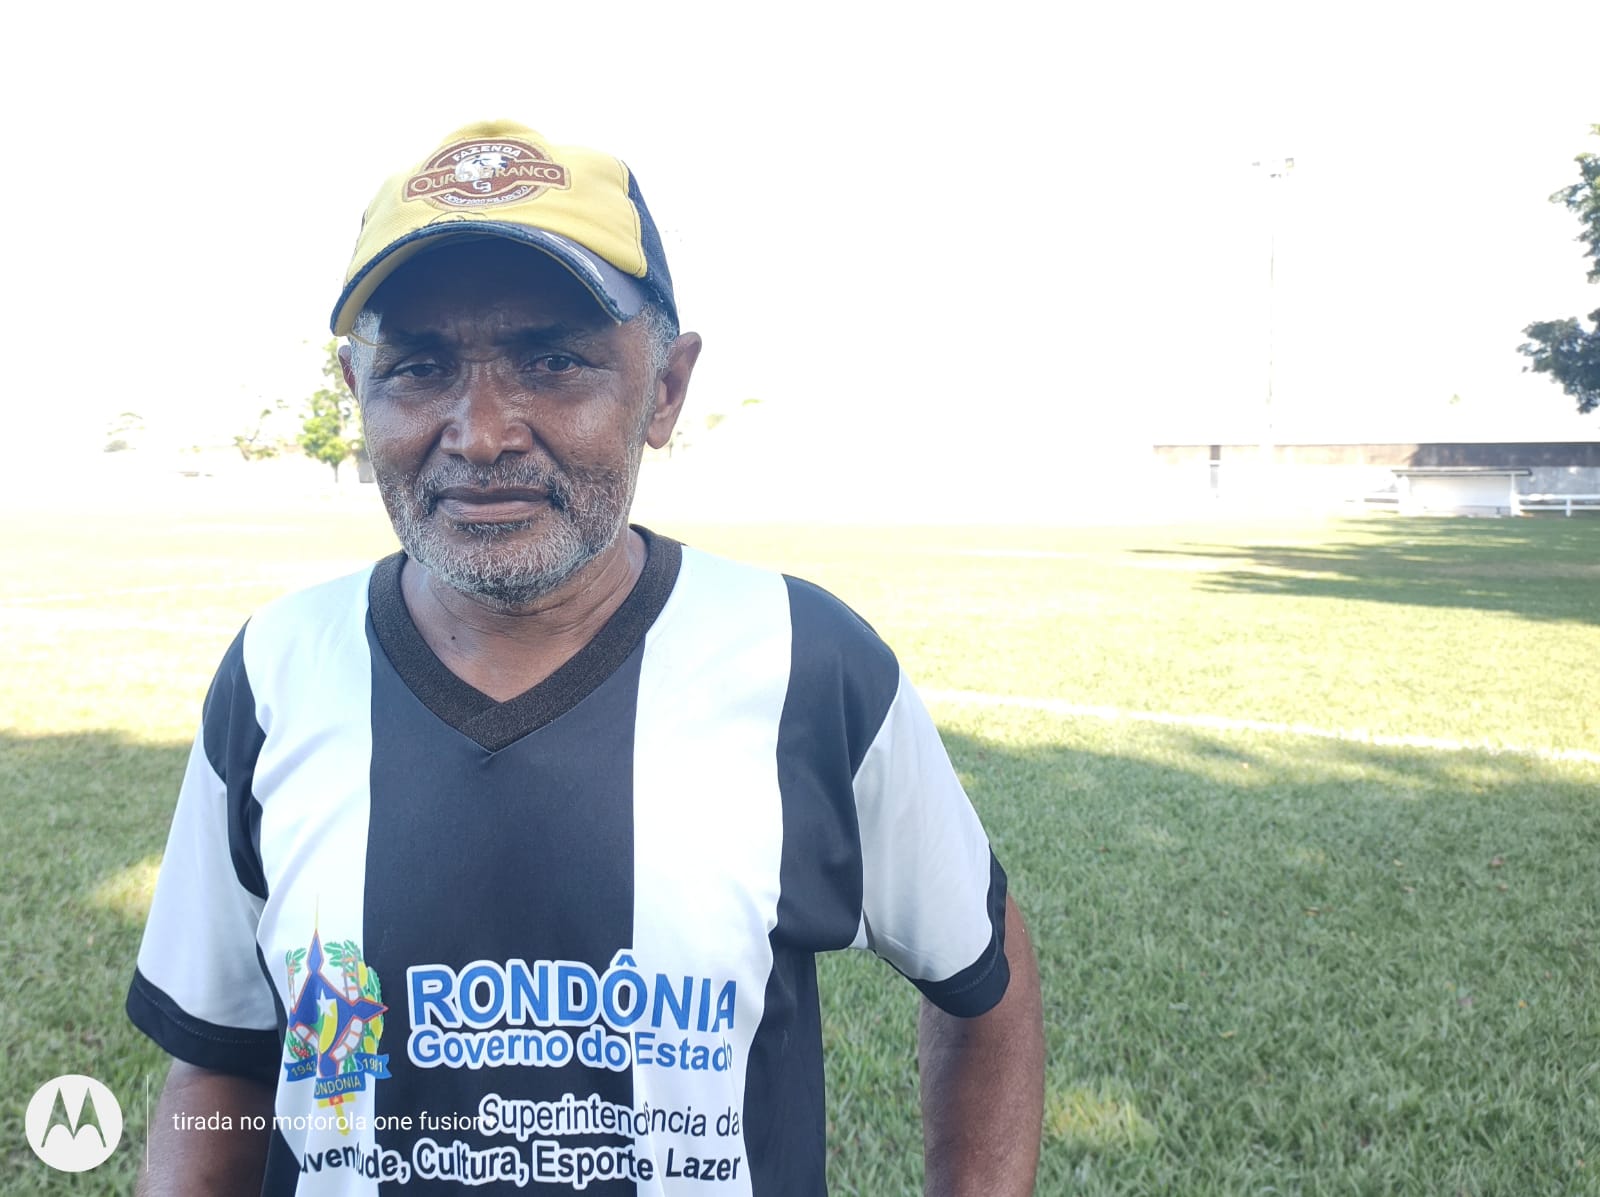 Rio Crespo: Tudo pronto para a final do campeonato municipal, afirma diretor de esporte.